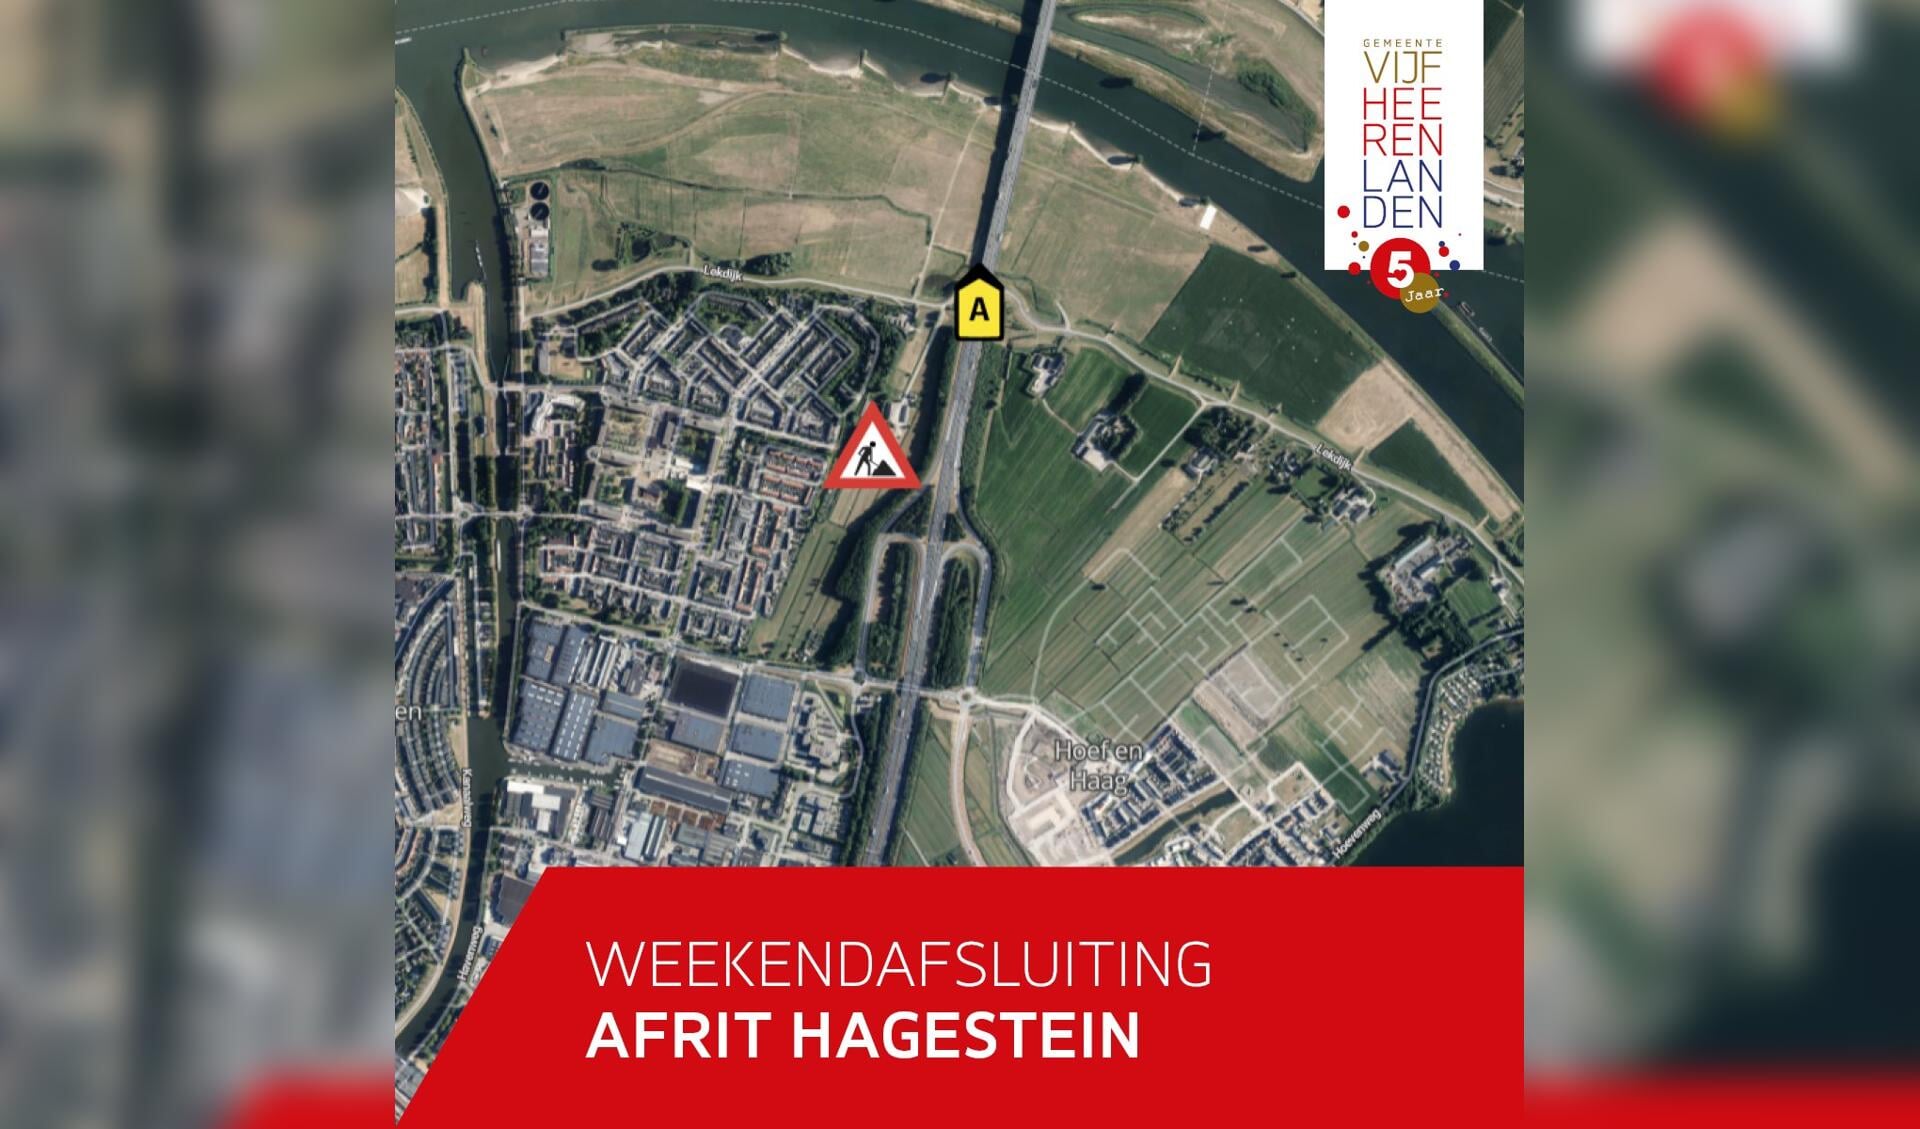 • Afrit 27 naar Hagestein is komen weekend afgesloten.